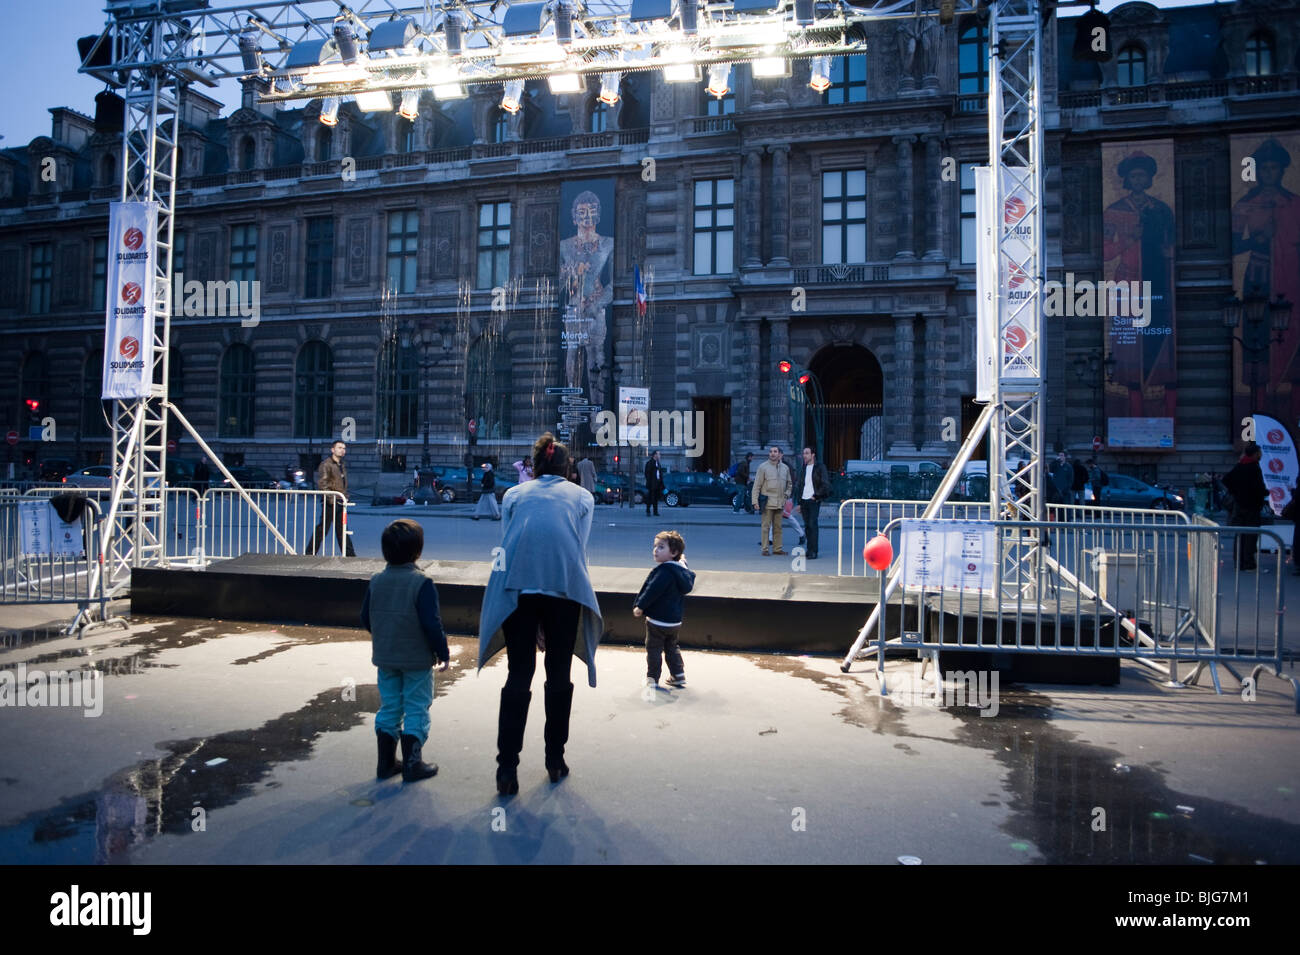 Paris, France, les personnes à la recherche d'eau à l'exposition de sculptures "pour célébrer la Journée mondiale de l'eau', 3/22, Place Palais Royale Banque D'Images